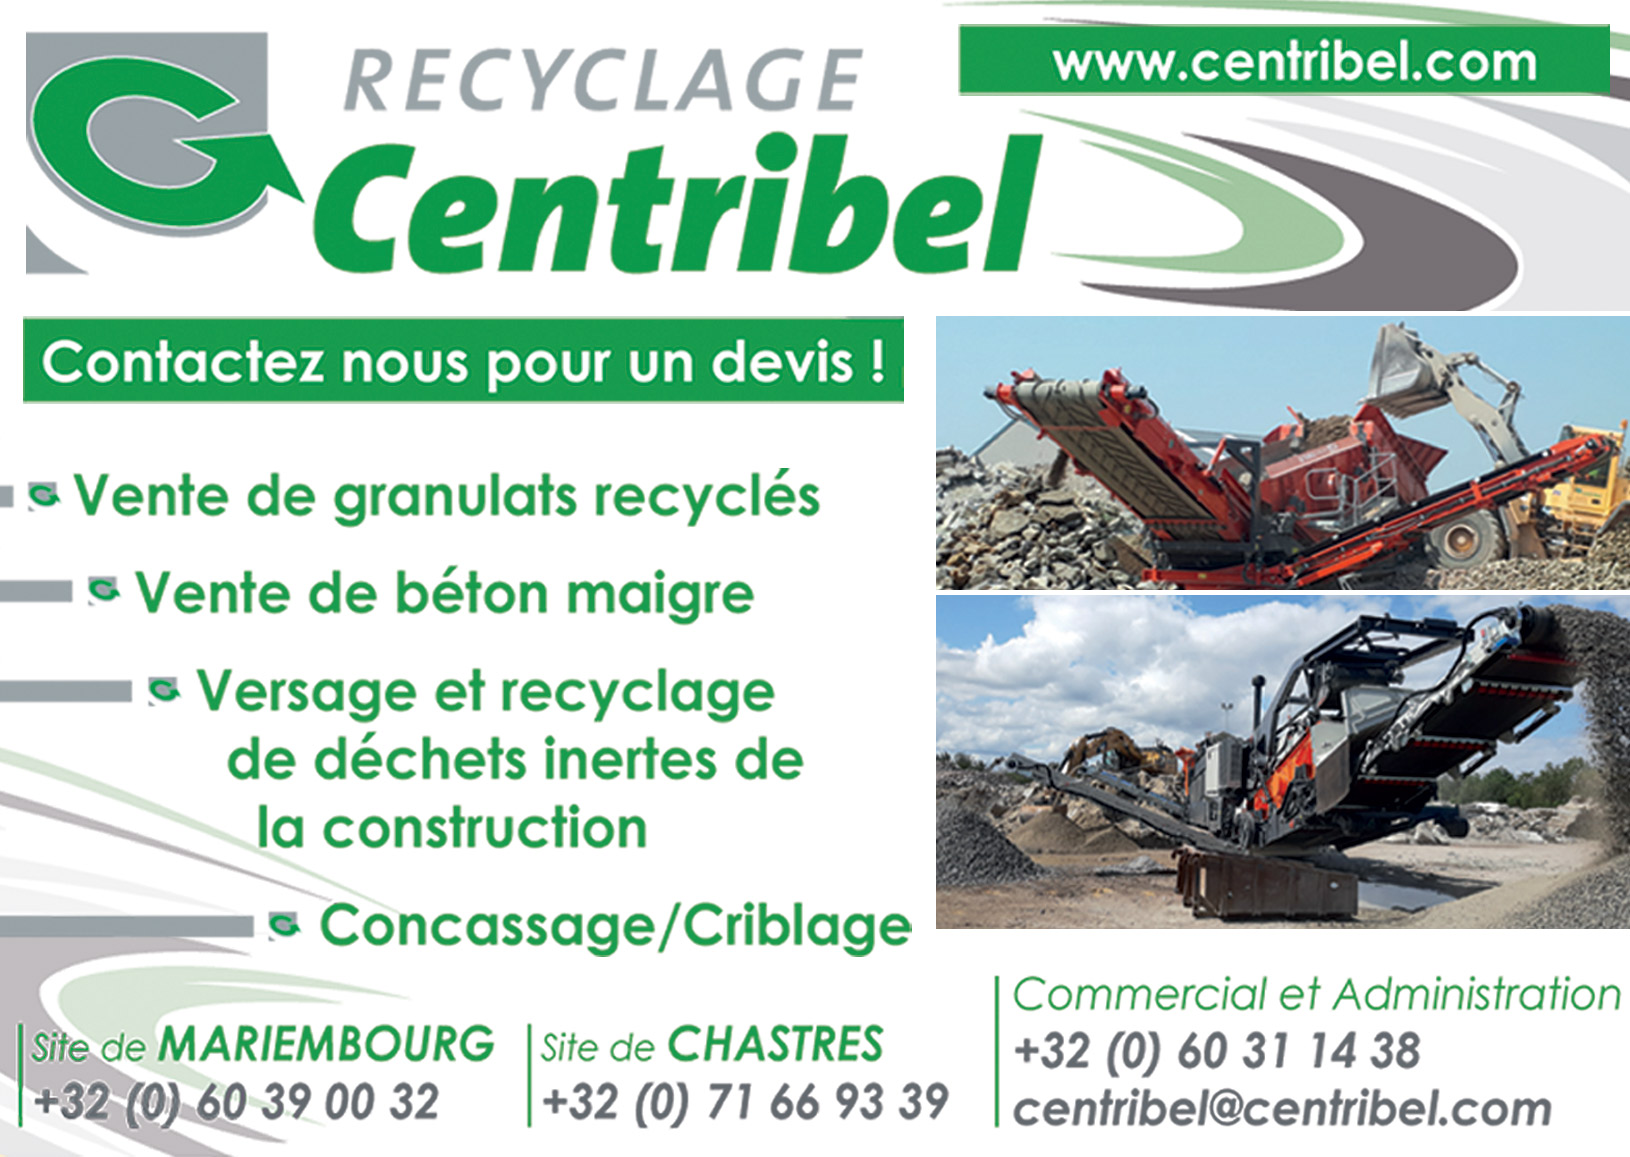 Centribel Recyclage Srl